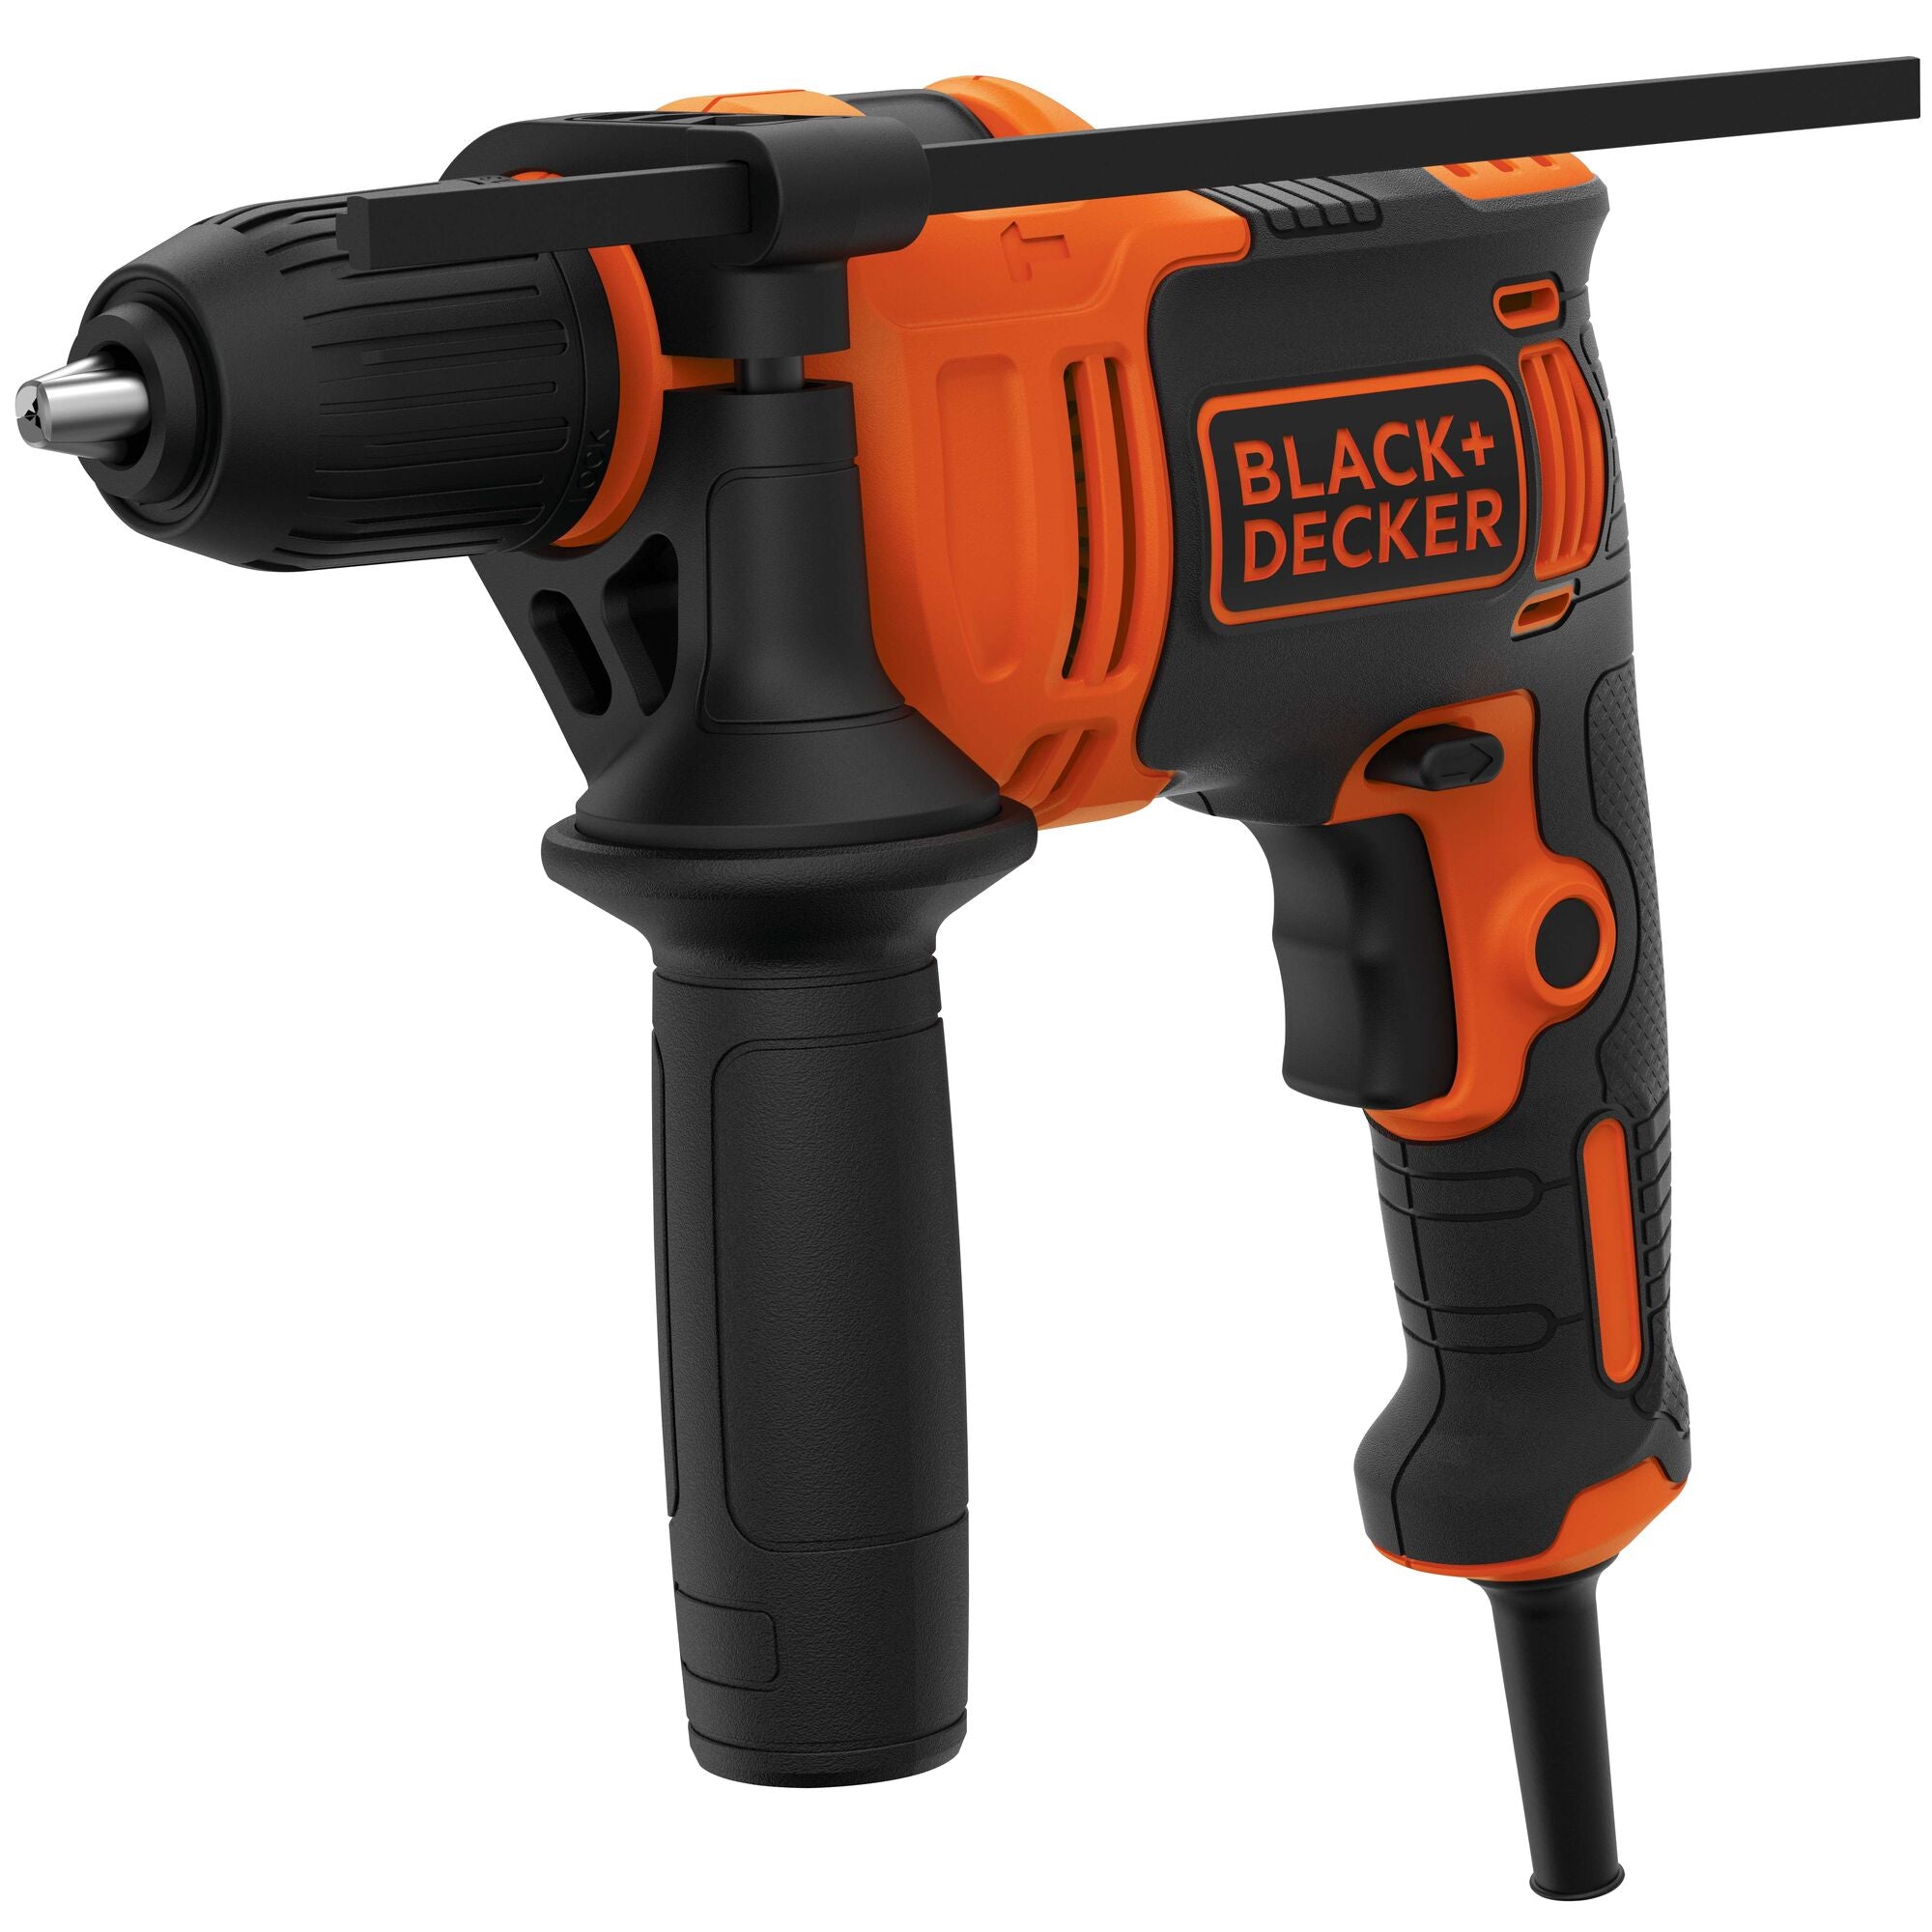 Black & Decker Behd201 6.5 Amp 1/2 in. Hammer Drill